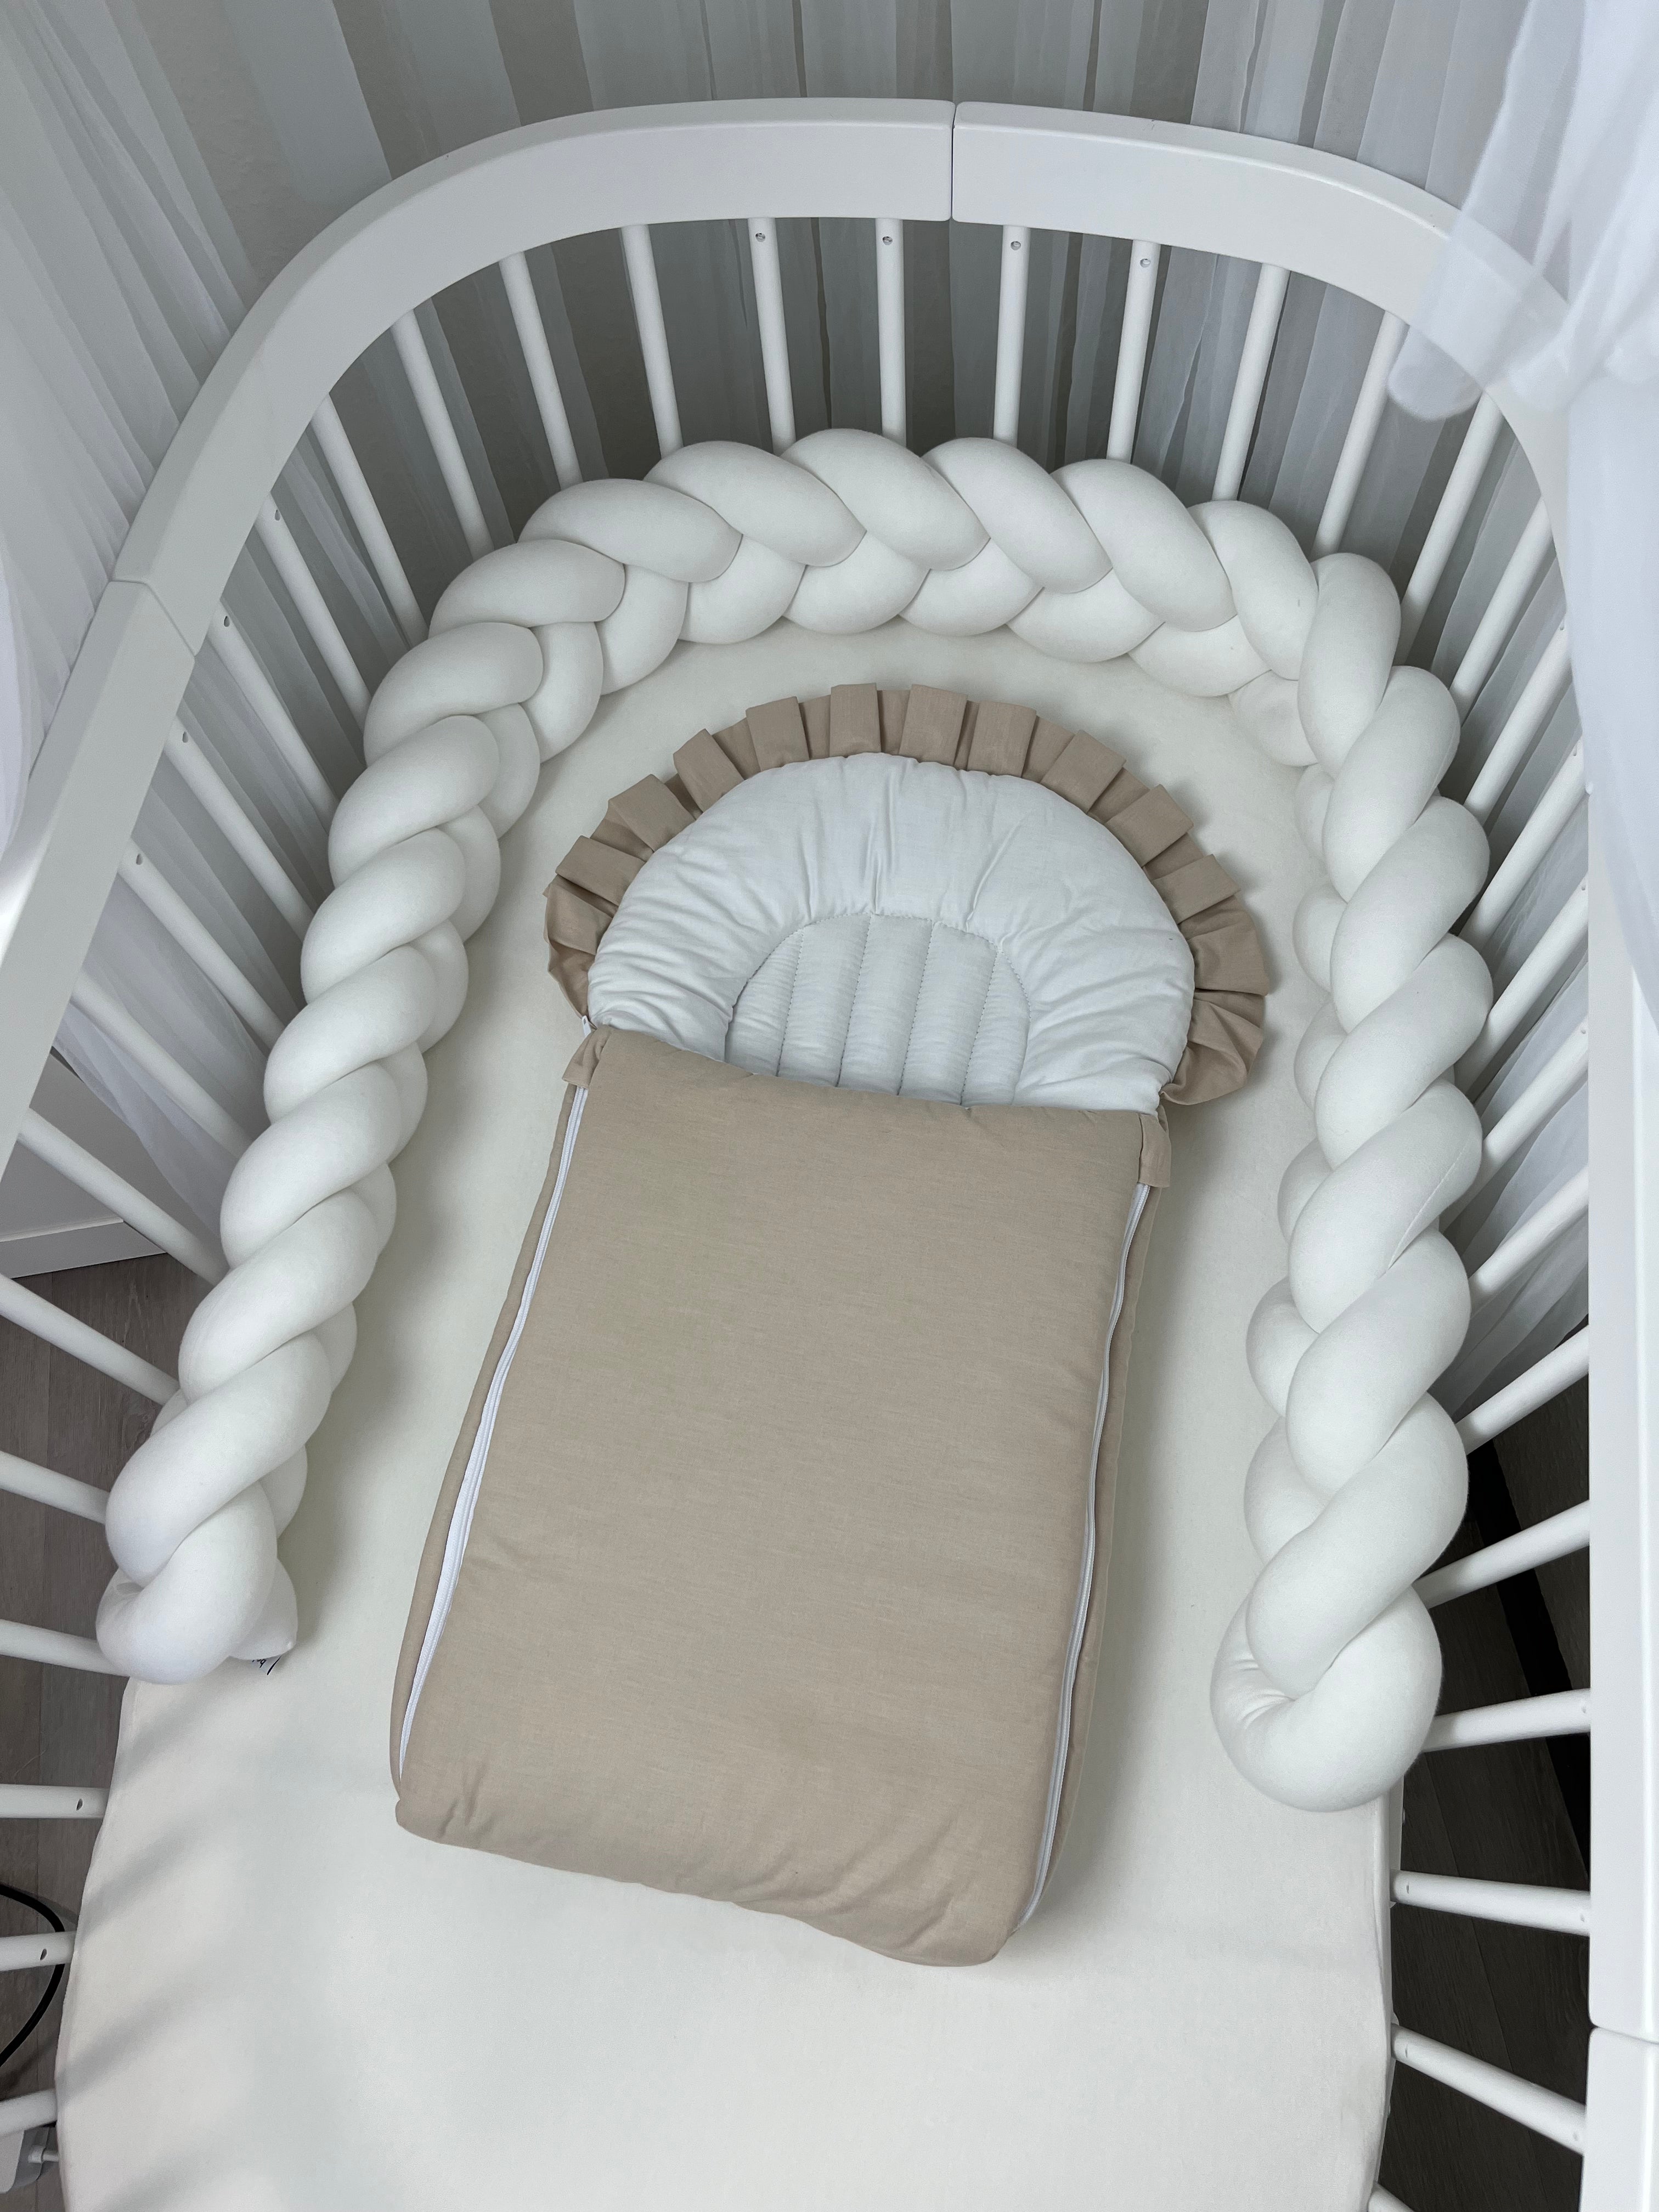 Flacher Babyschlafsack mit Wellenschnitt & Rüschen | Baumwolle